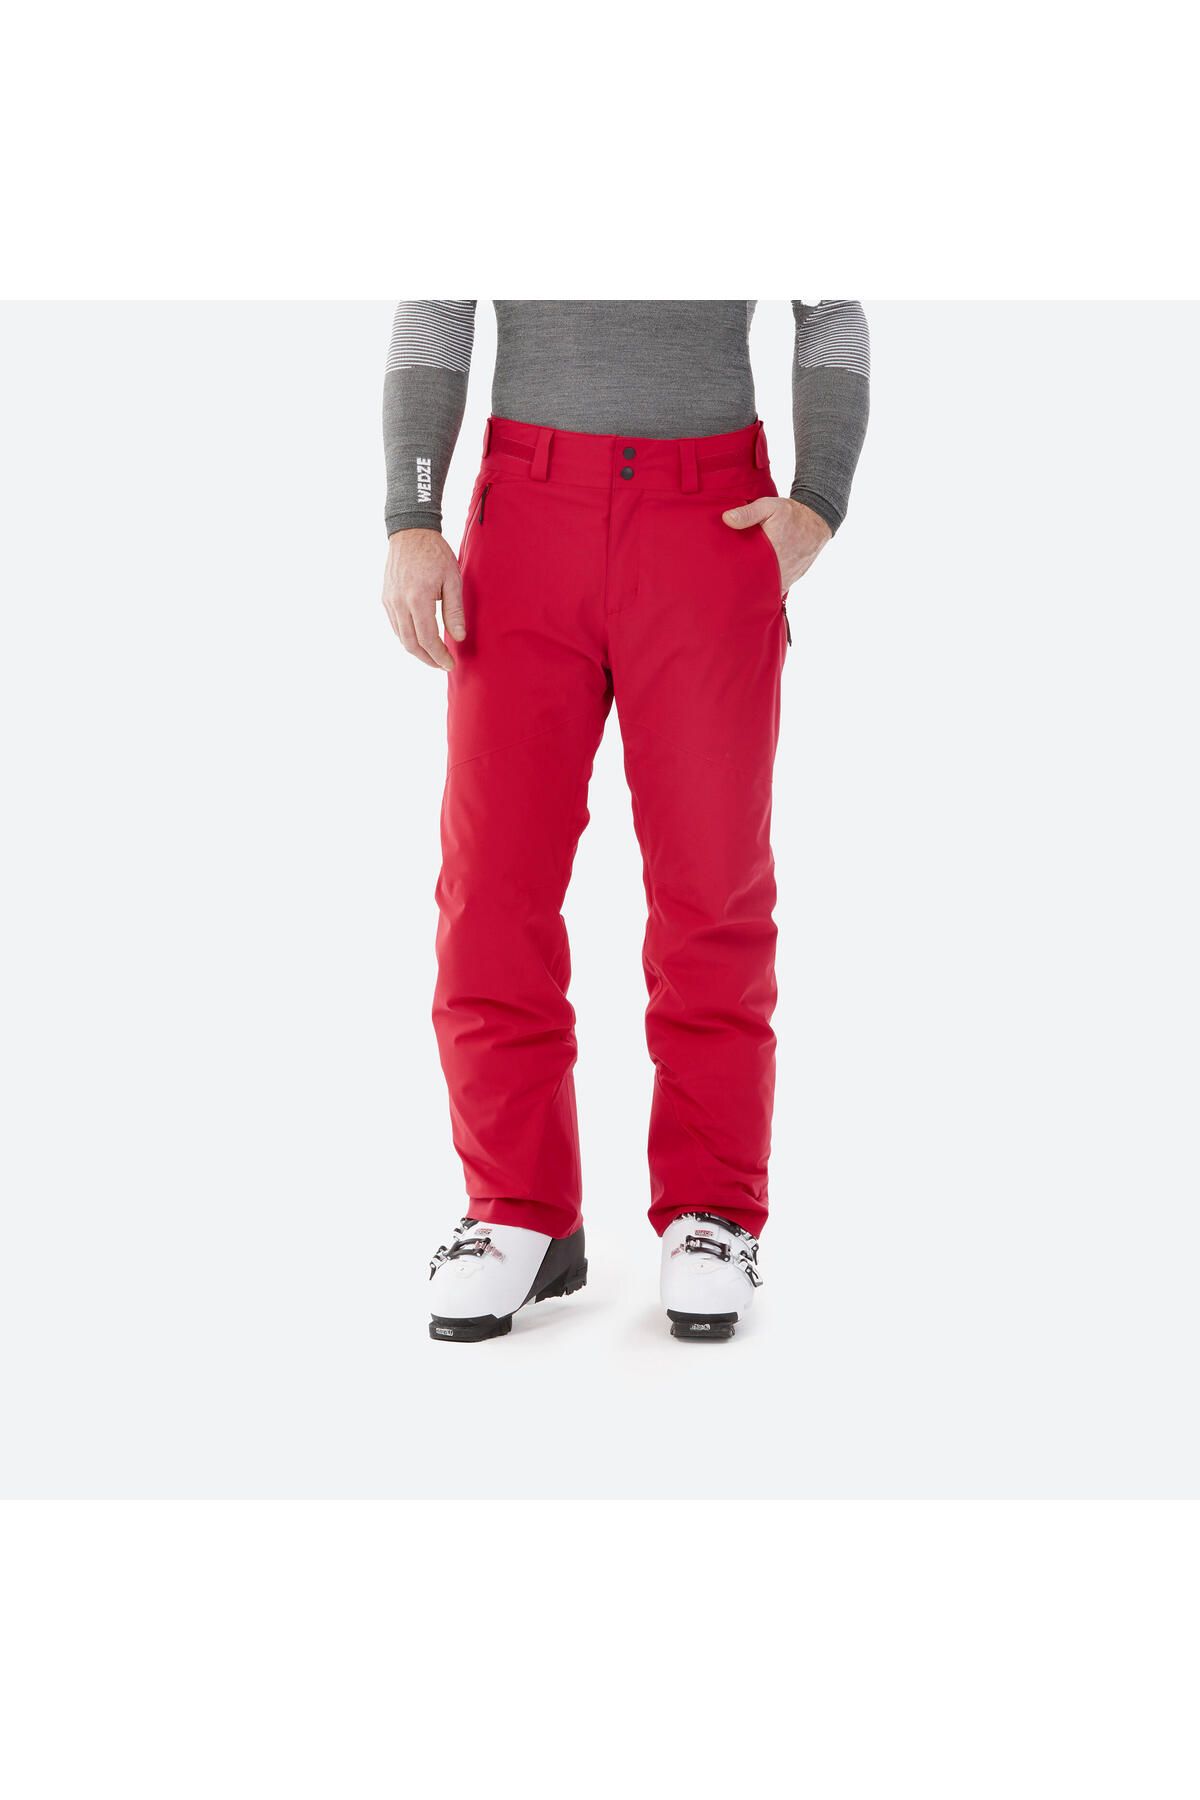 Decathlon Erkek Kayak Pantolonu - Kırmızı - 500